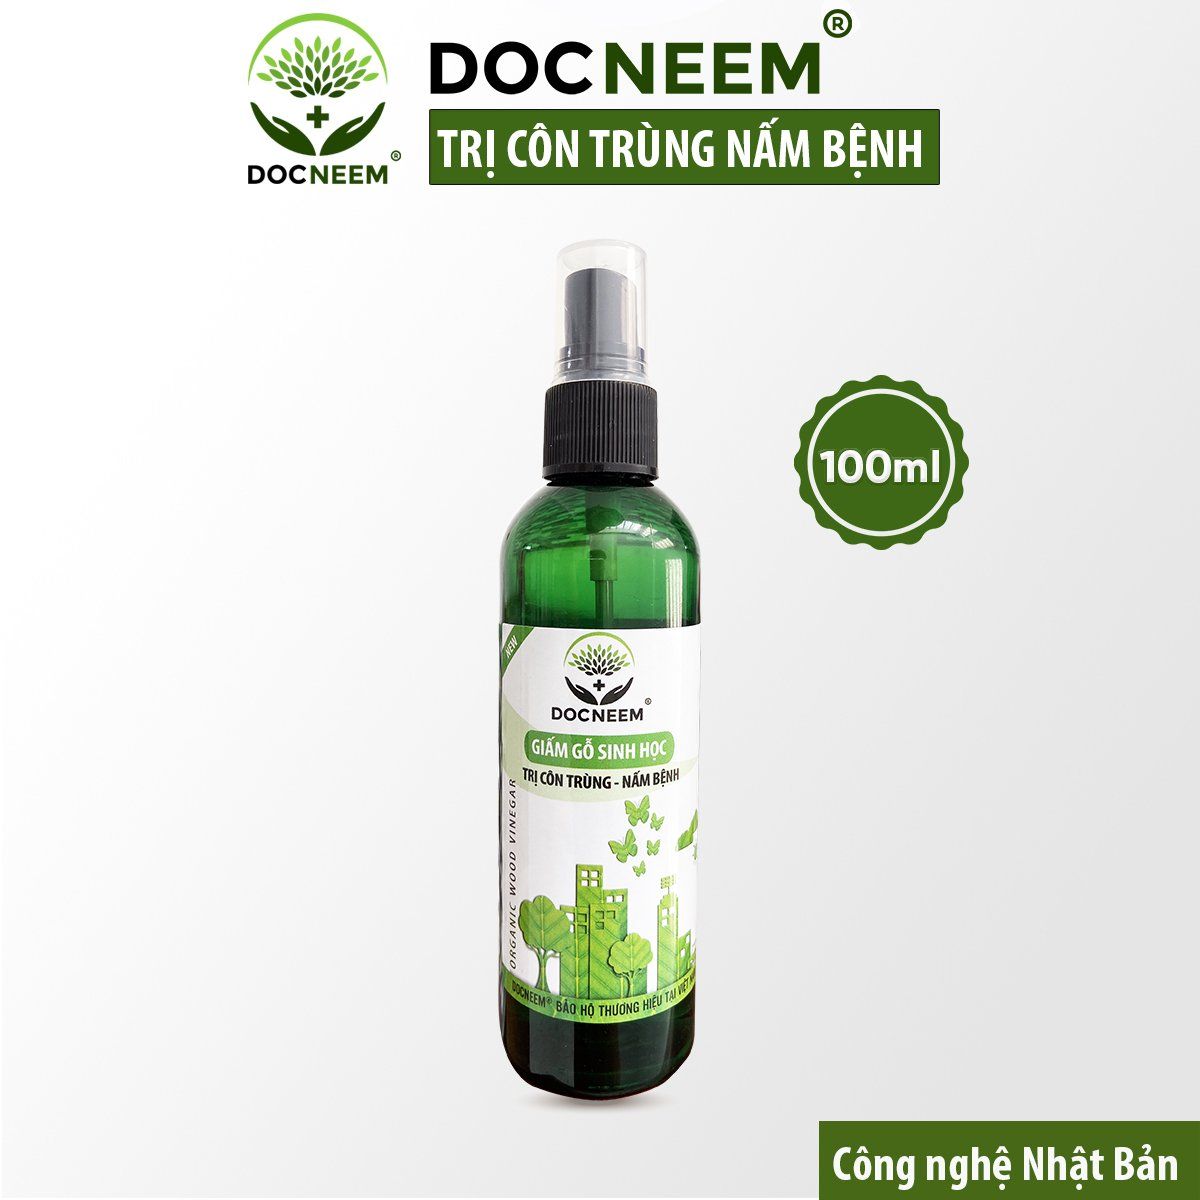  Giấm gỗ sinh học (100ml) - thương hiệu Docneem 